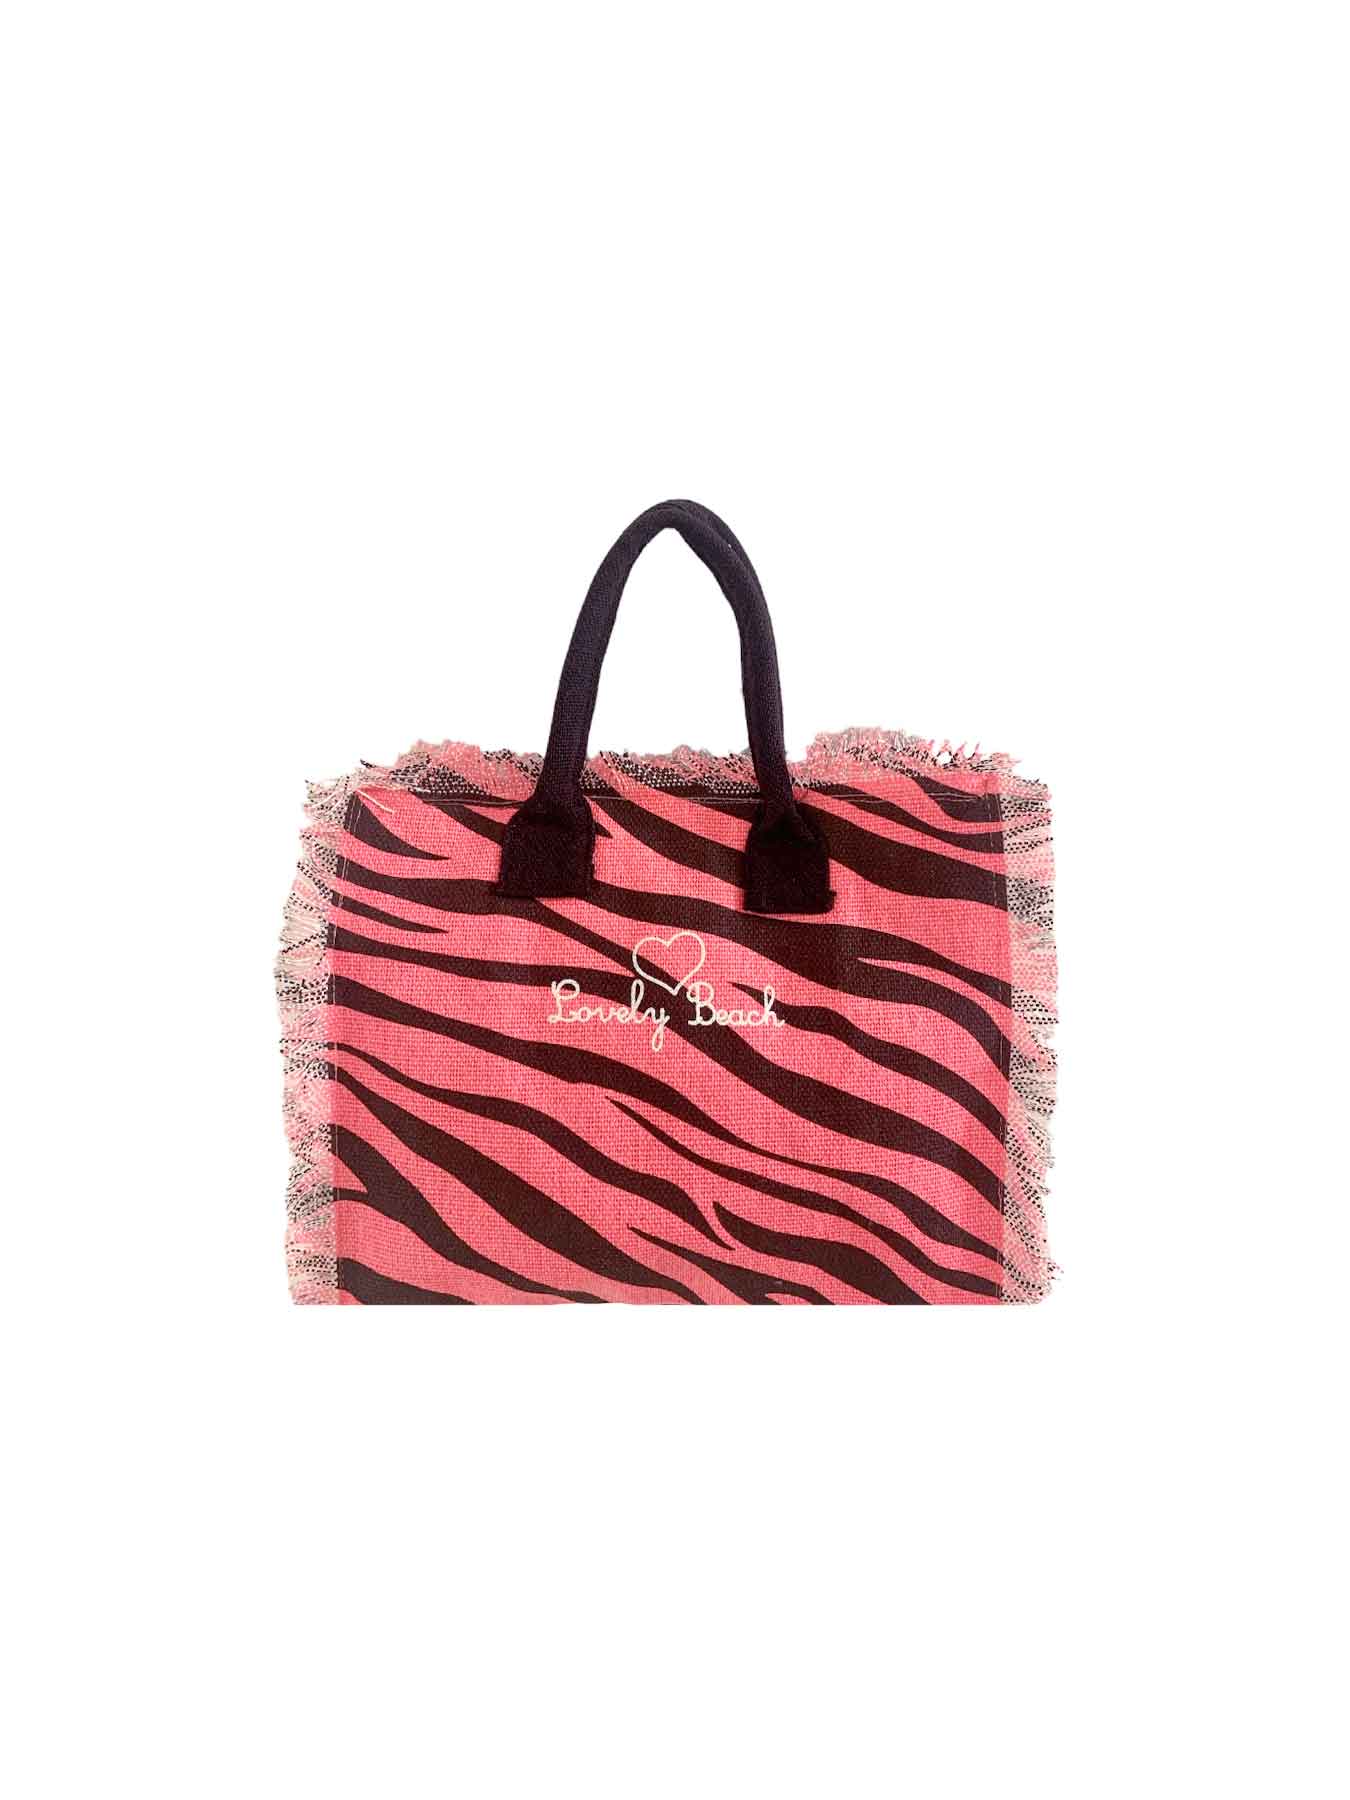 Lovely Beach Borsetta Mare Beach Girl Hand Bag New Zebra